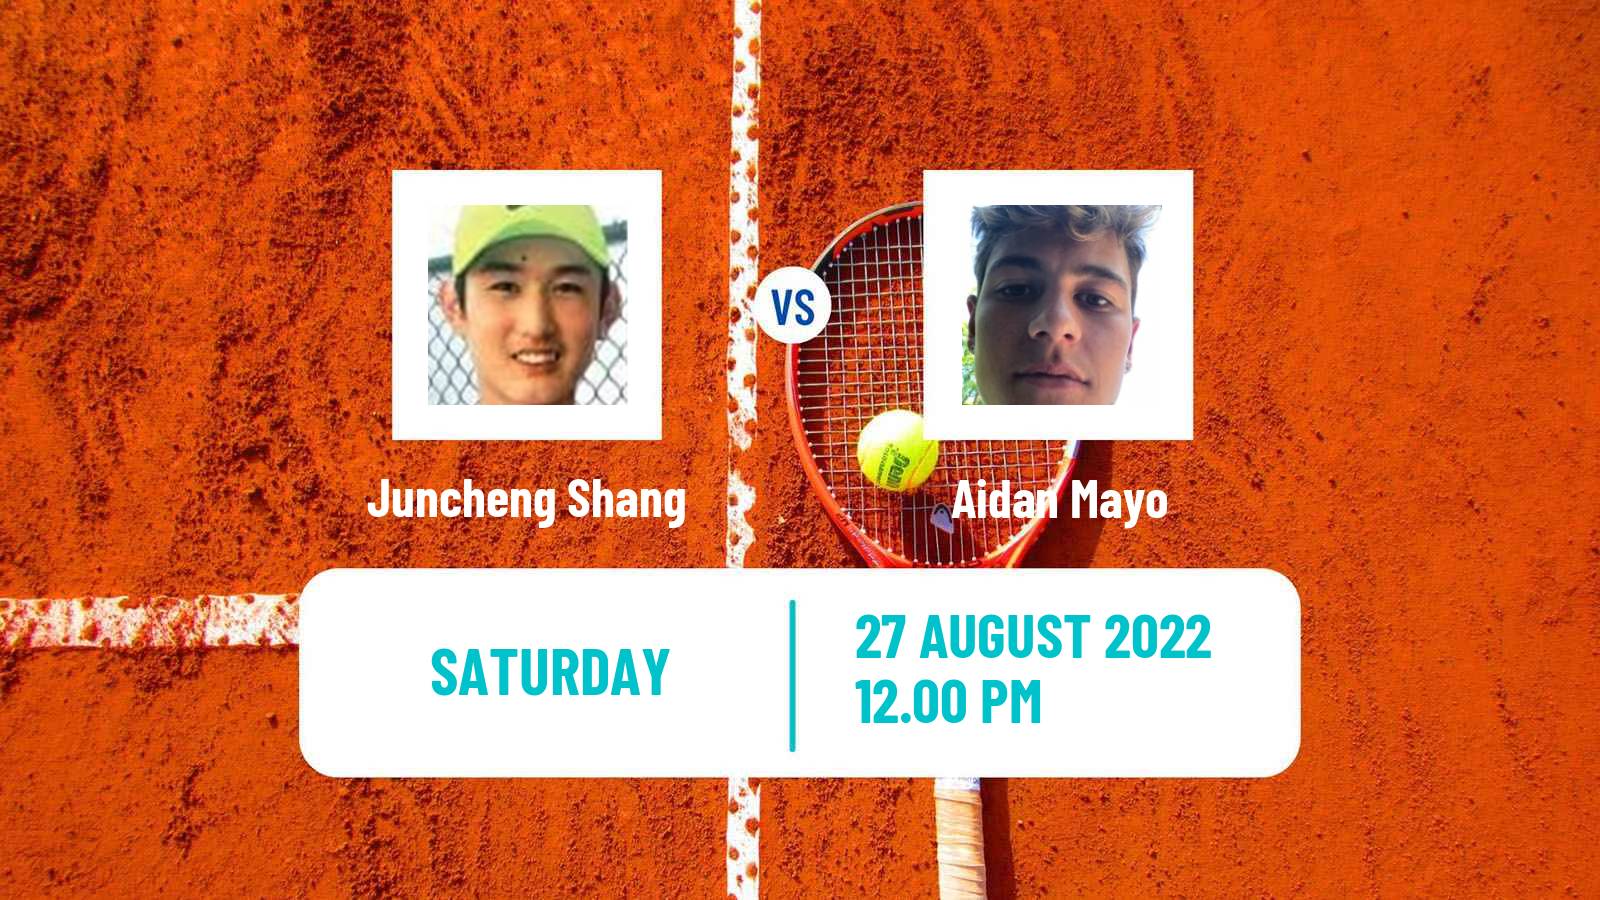 Tennis ATP Challenger Juncheng Shang - Aidan Mayo